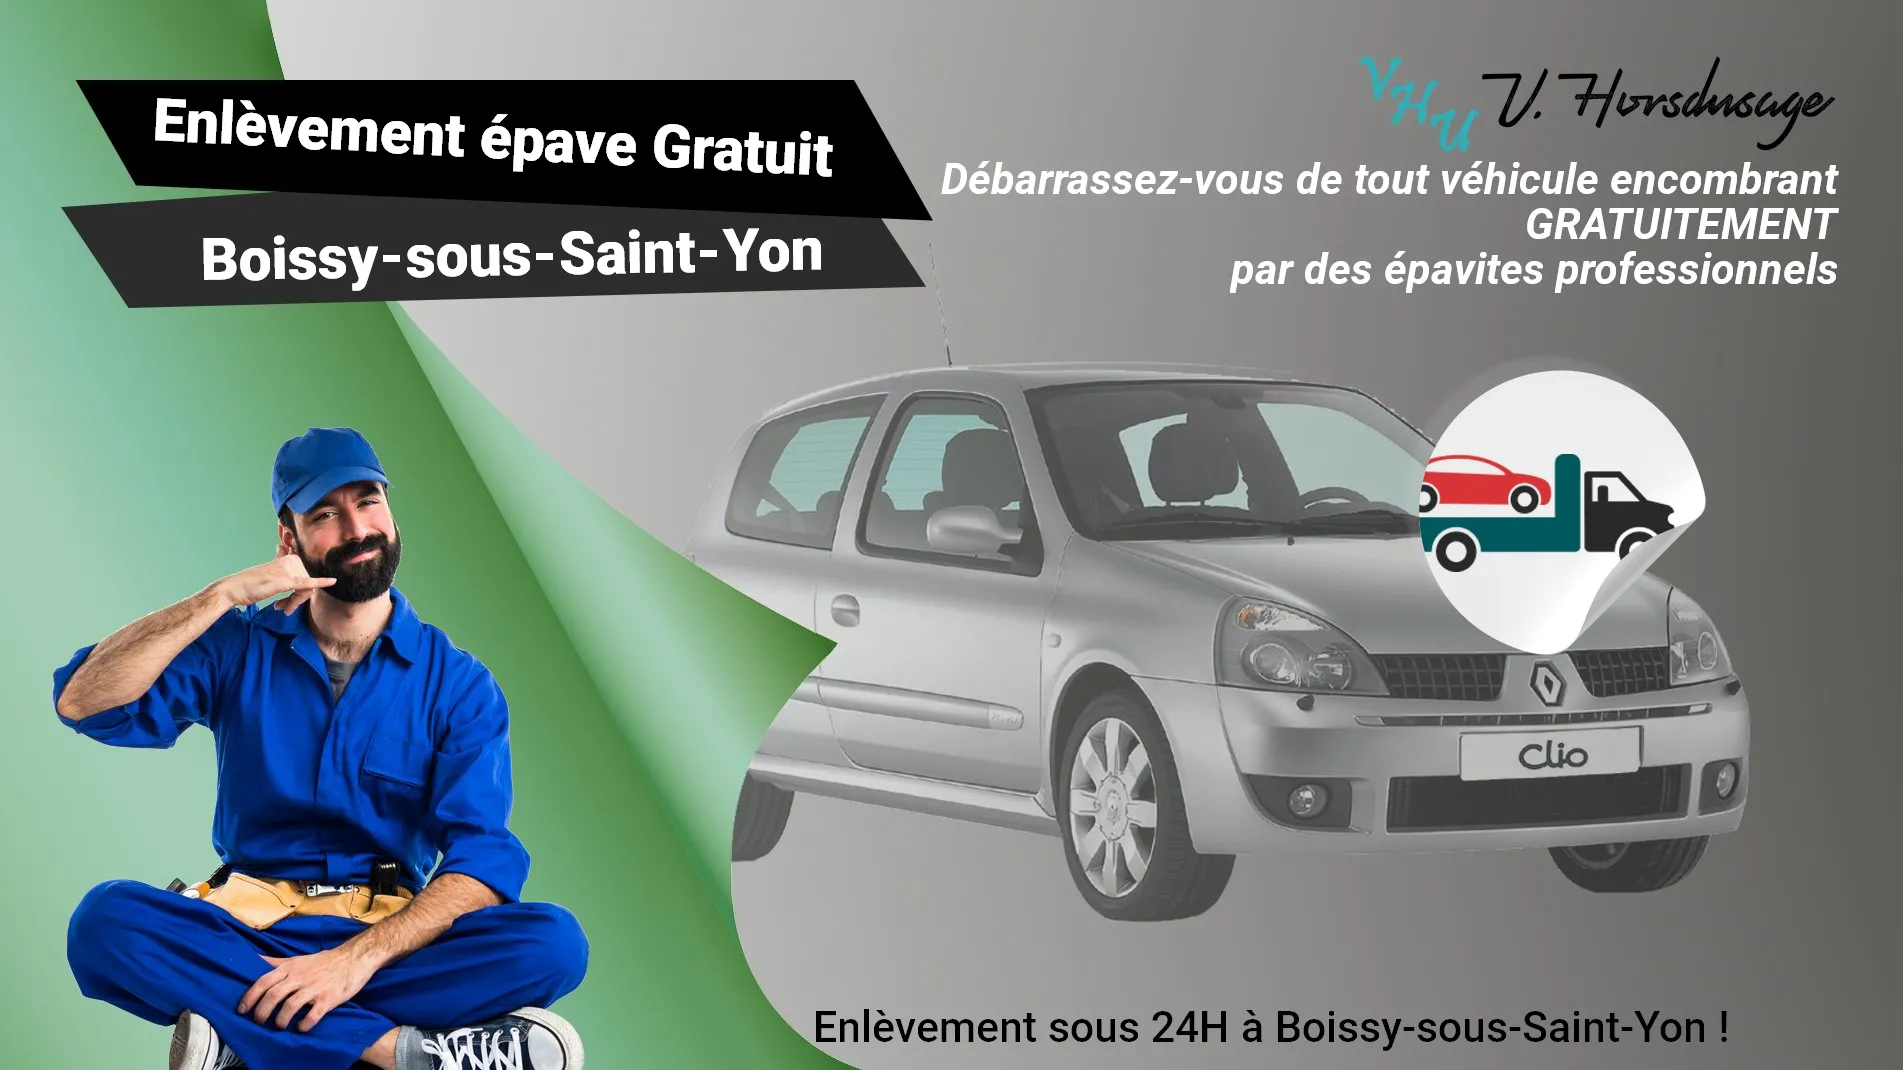 Pour un enlèvement gratuit à Boissy-sous-Saint-Yon, contactez nos épavistes agréé VHU